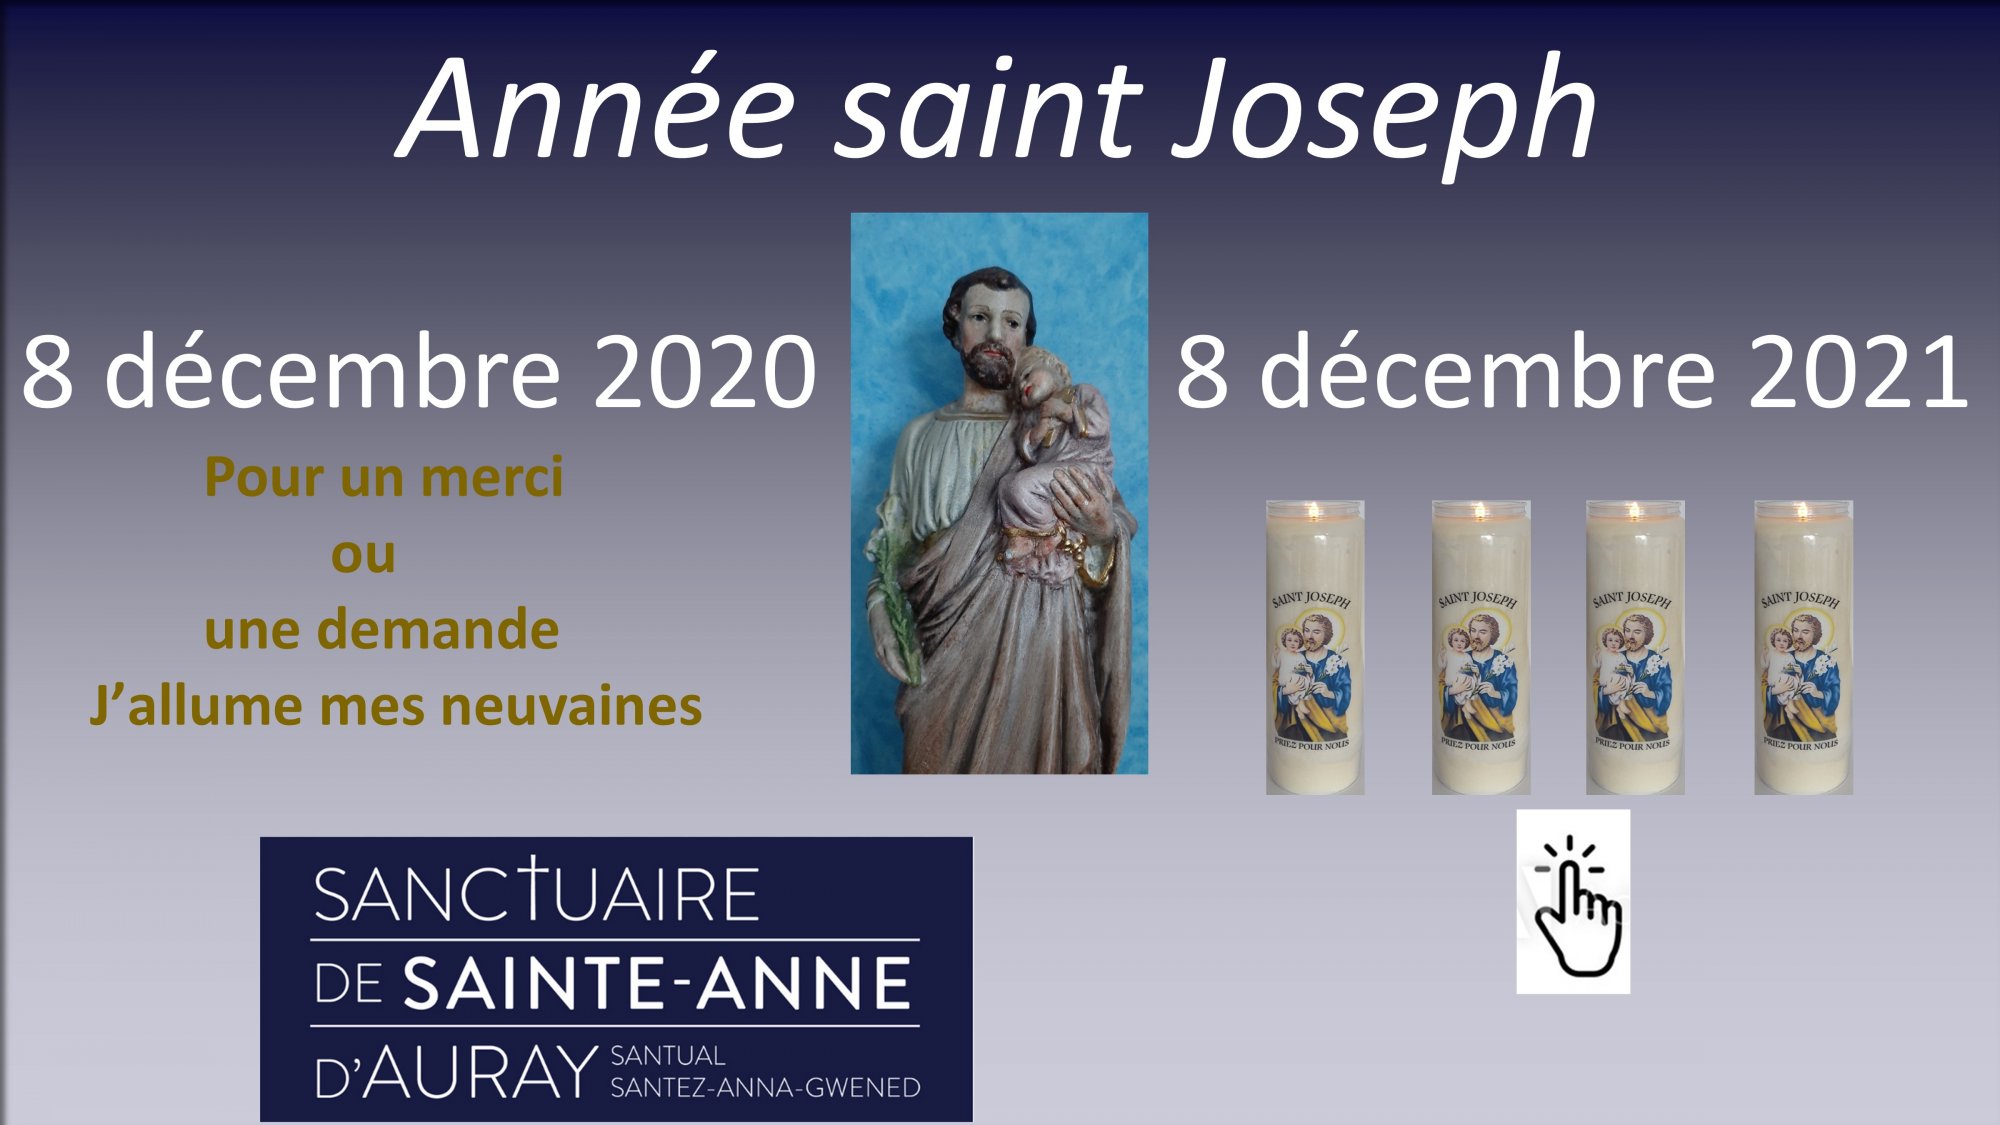 140579-8-decembre-2020-annee-saint-joseph-8-decembre-2021